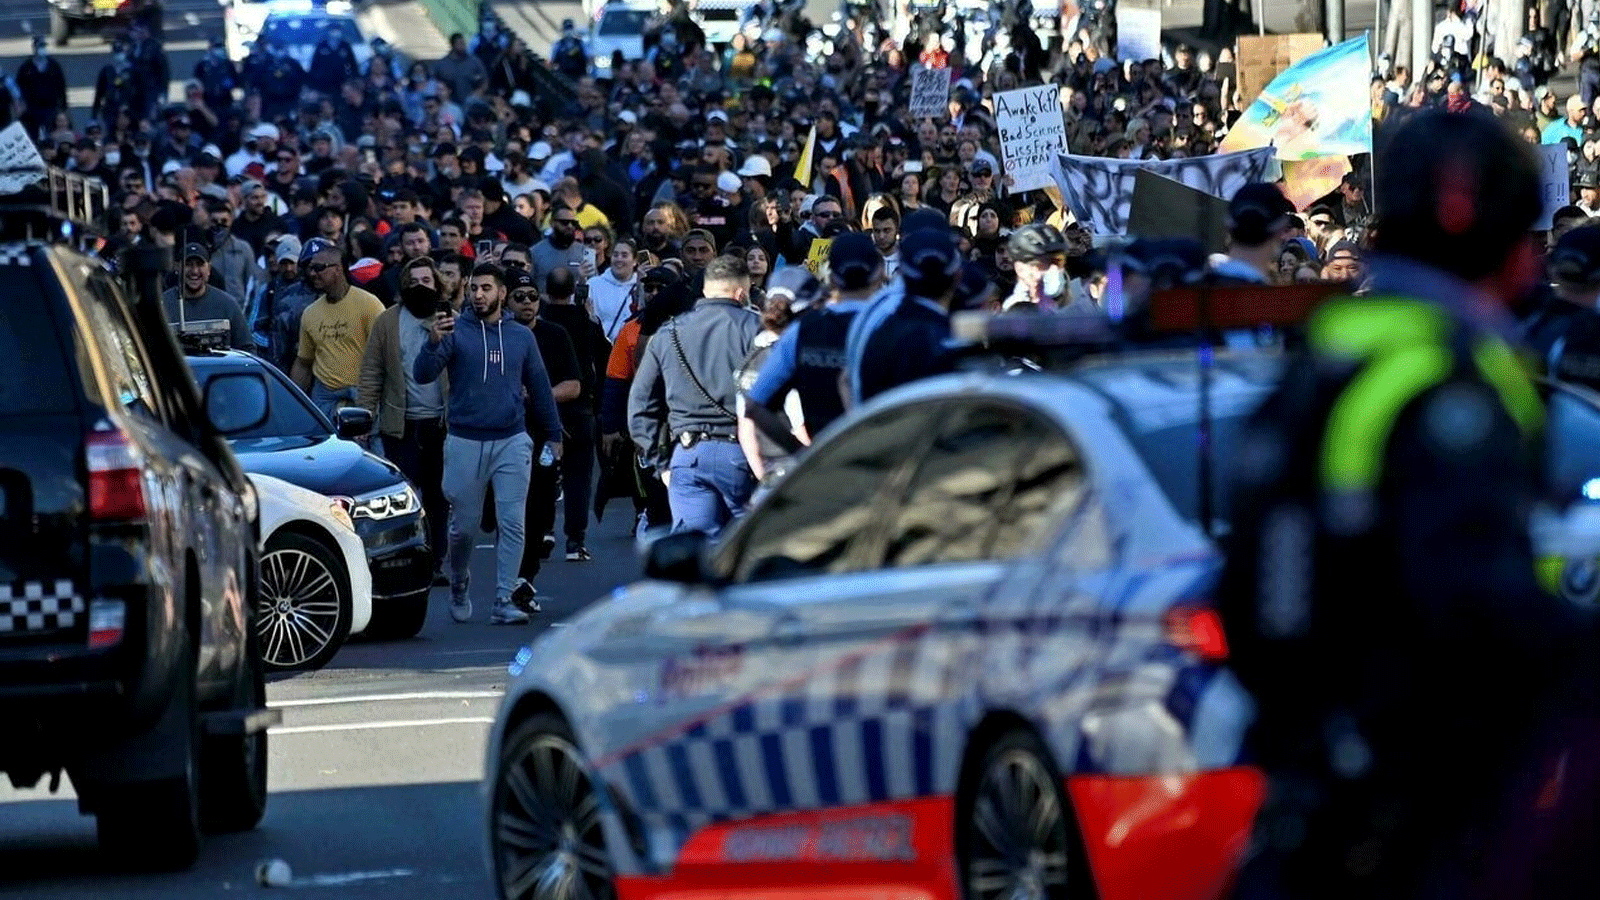 الشرطة تقطع الطريق على المتظاهرين خلال مسيرة مناهضة للإغلاق في سيدني، حيث تجمع الآلاف للتظاهر ضد أمر البقاء في المنزل لمدة شهر في المدينة. بتاريخ 24 تموز/ يوليو 2021